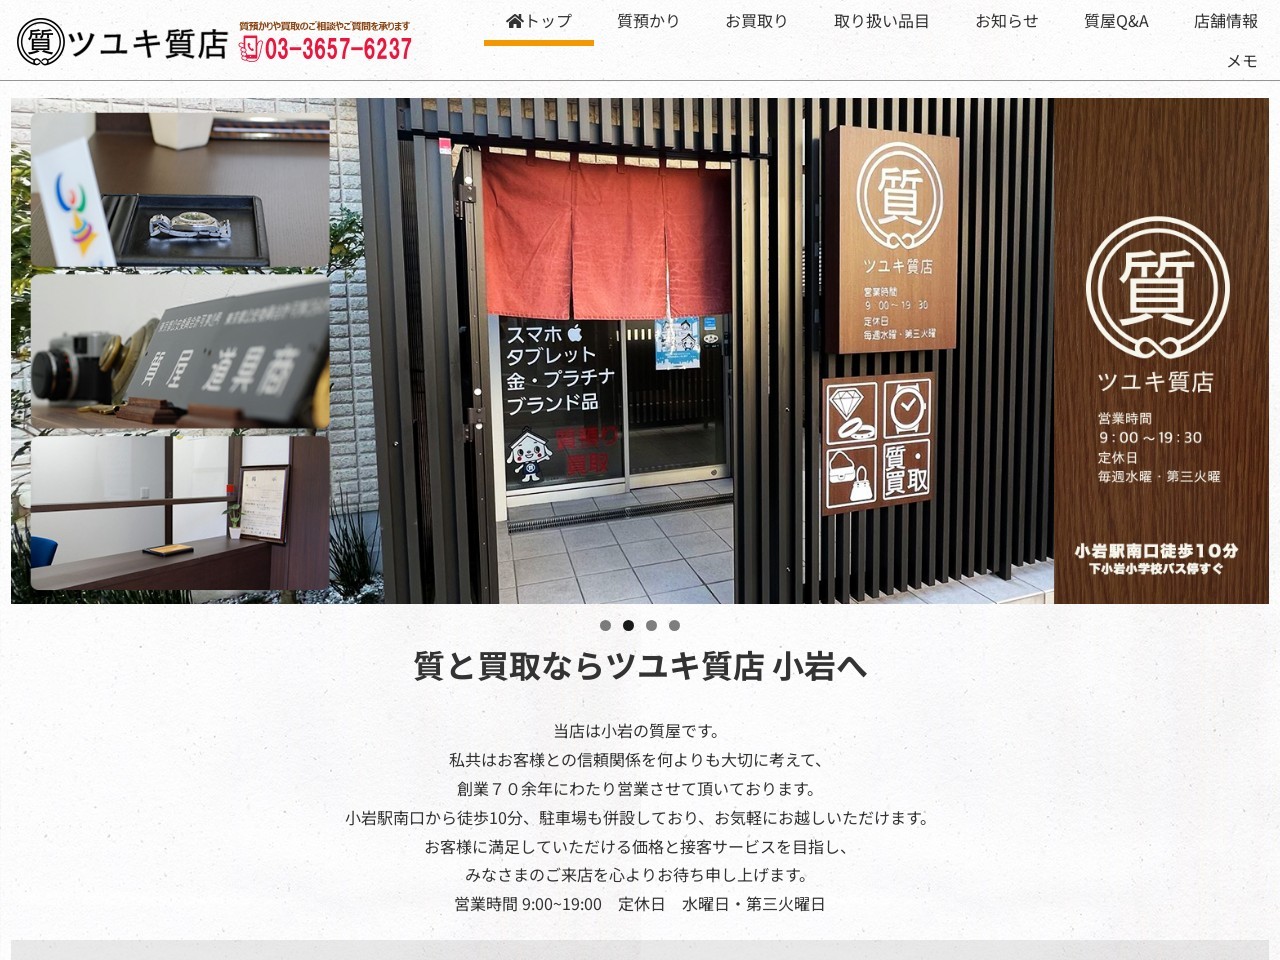 ツユキ質店 | ブランド品・貴金属の高価買取は東京都江戸川区のツユキ質店へ。